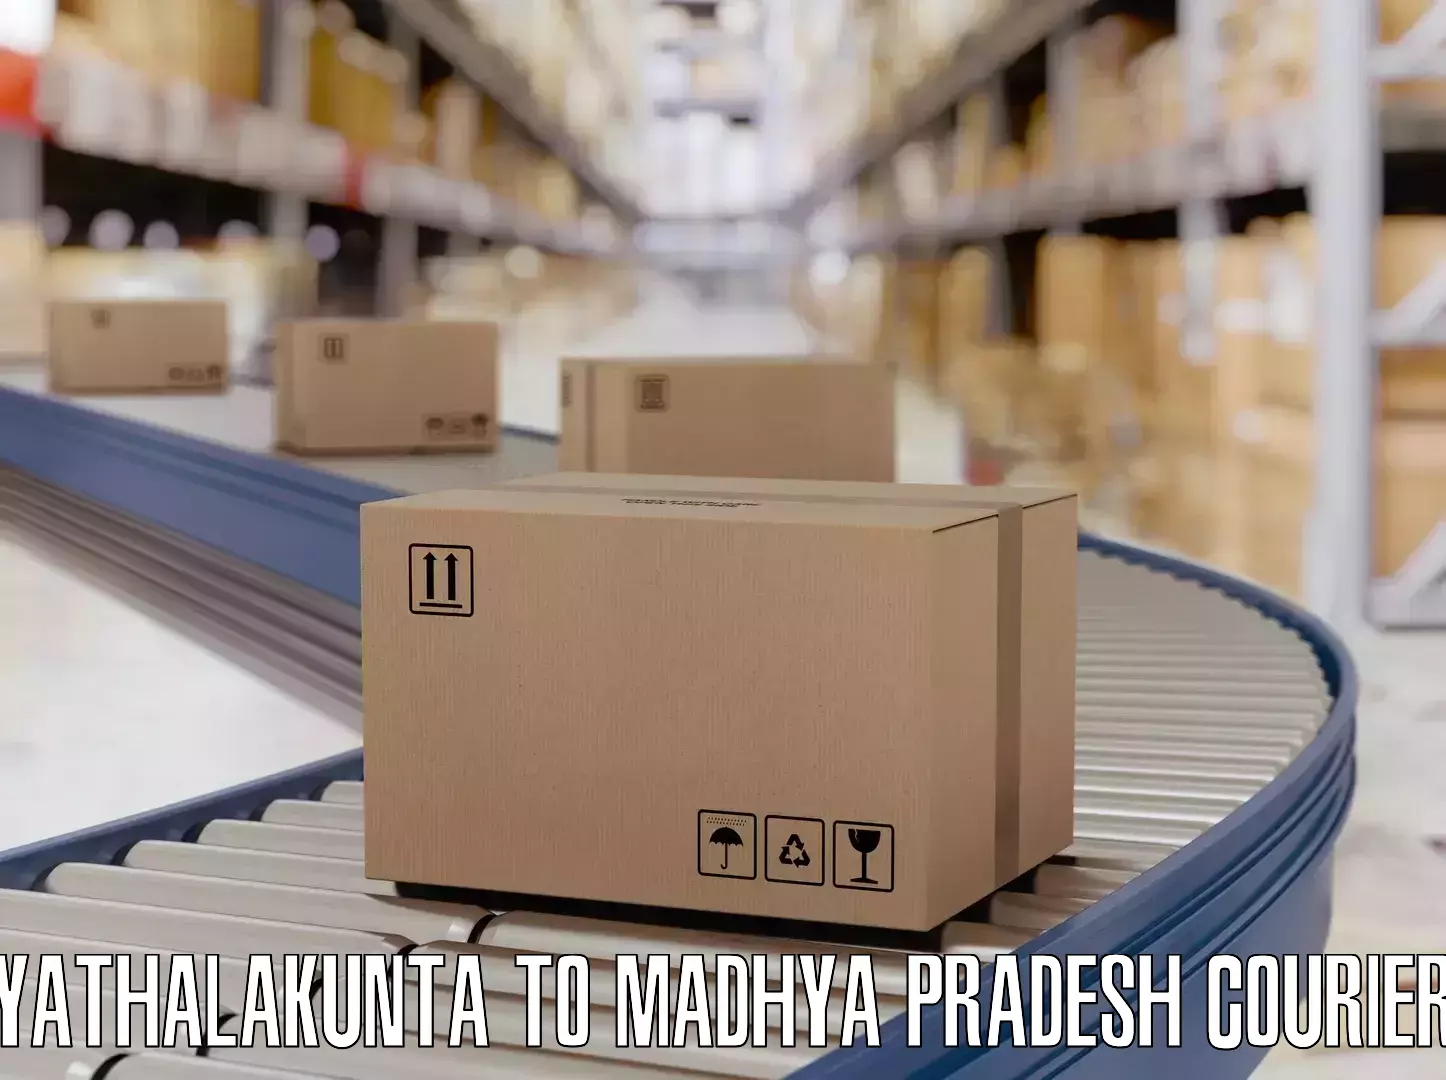 Luggage shipping rates Yathalakunta to Madwas